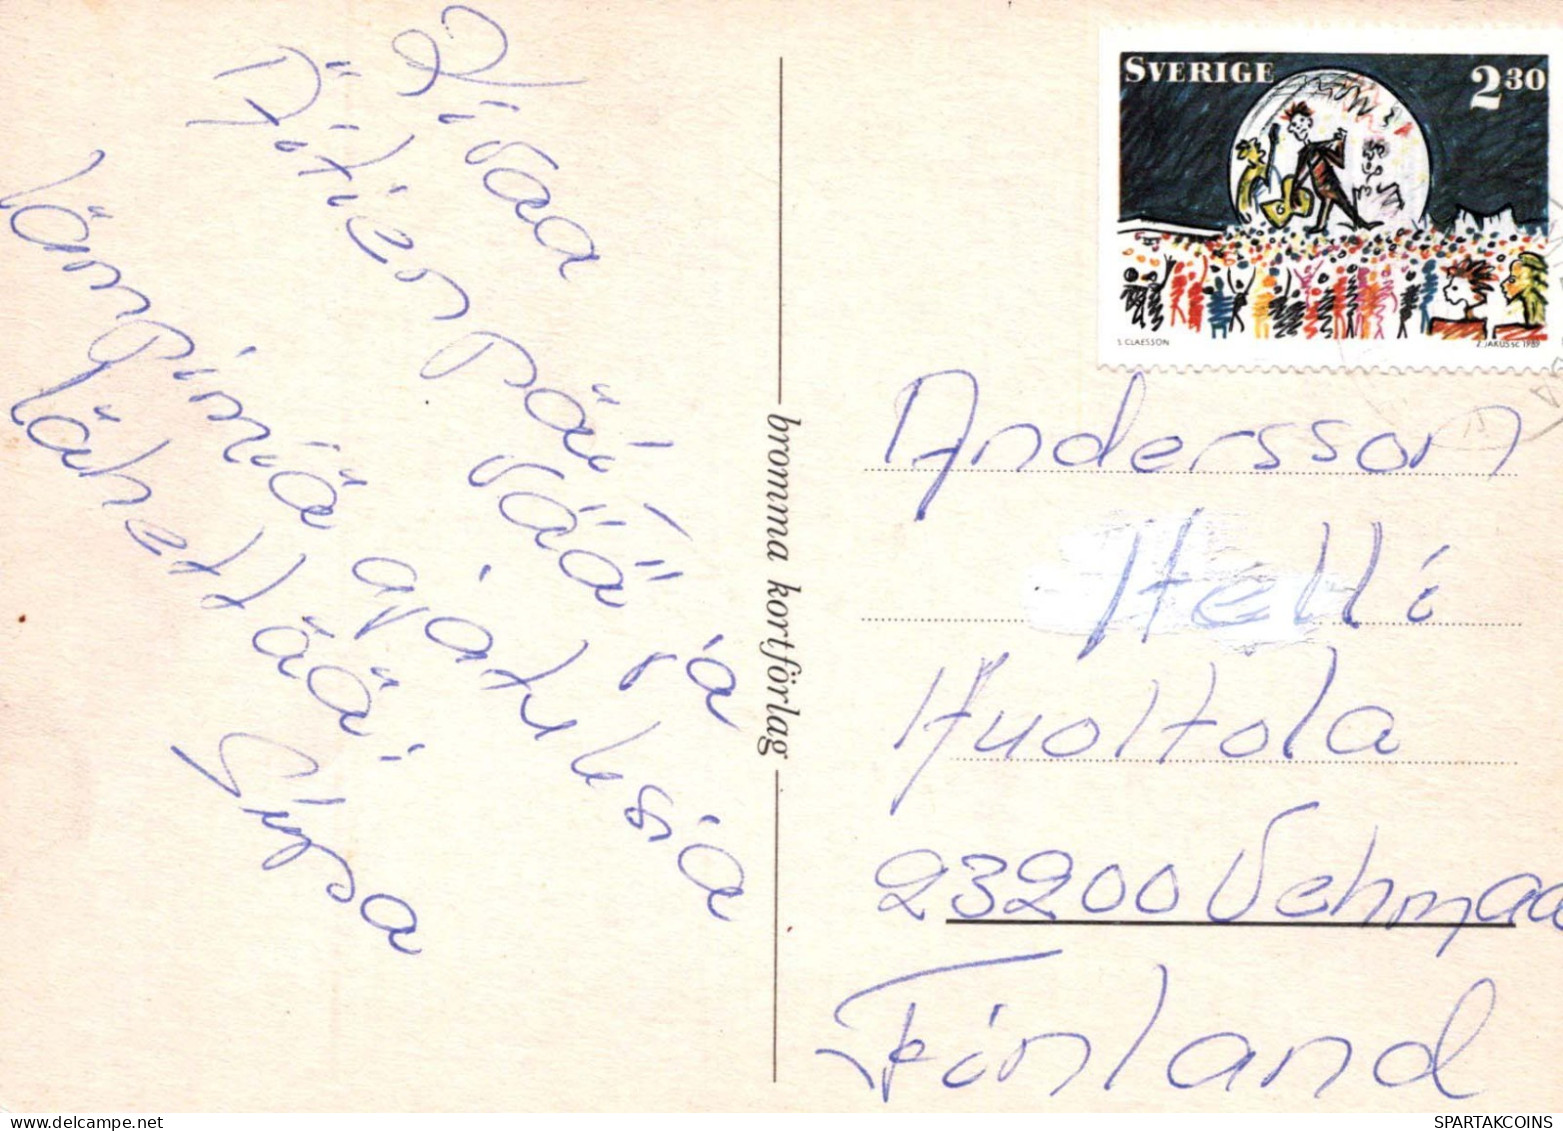 FLORES Vintage Tarjeta Postal CPSM #PAS240.ES - Flowers